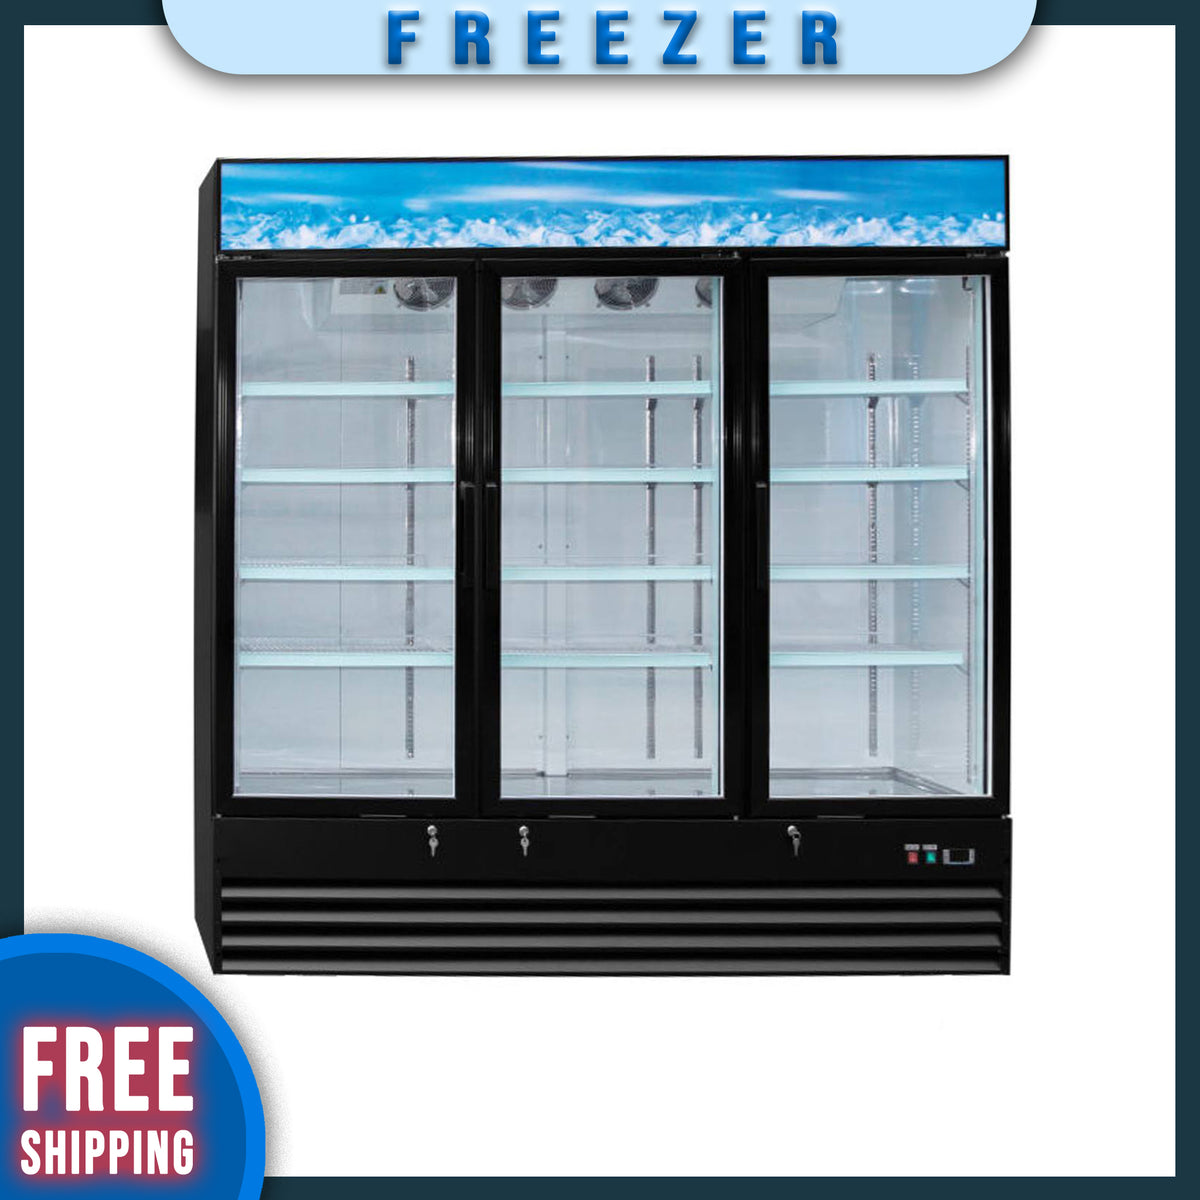 79" 3 Glass Door Reach-in Display Freezer, SD1.9L3-HC